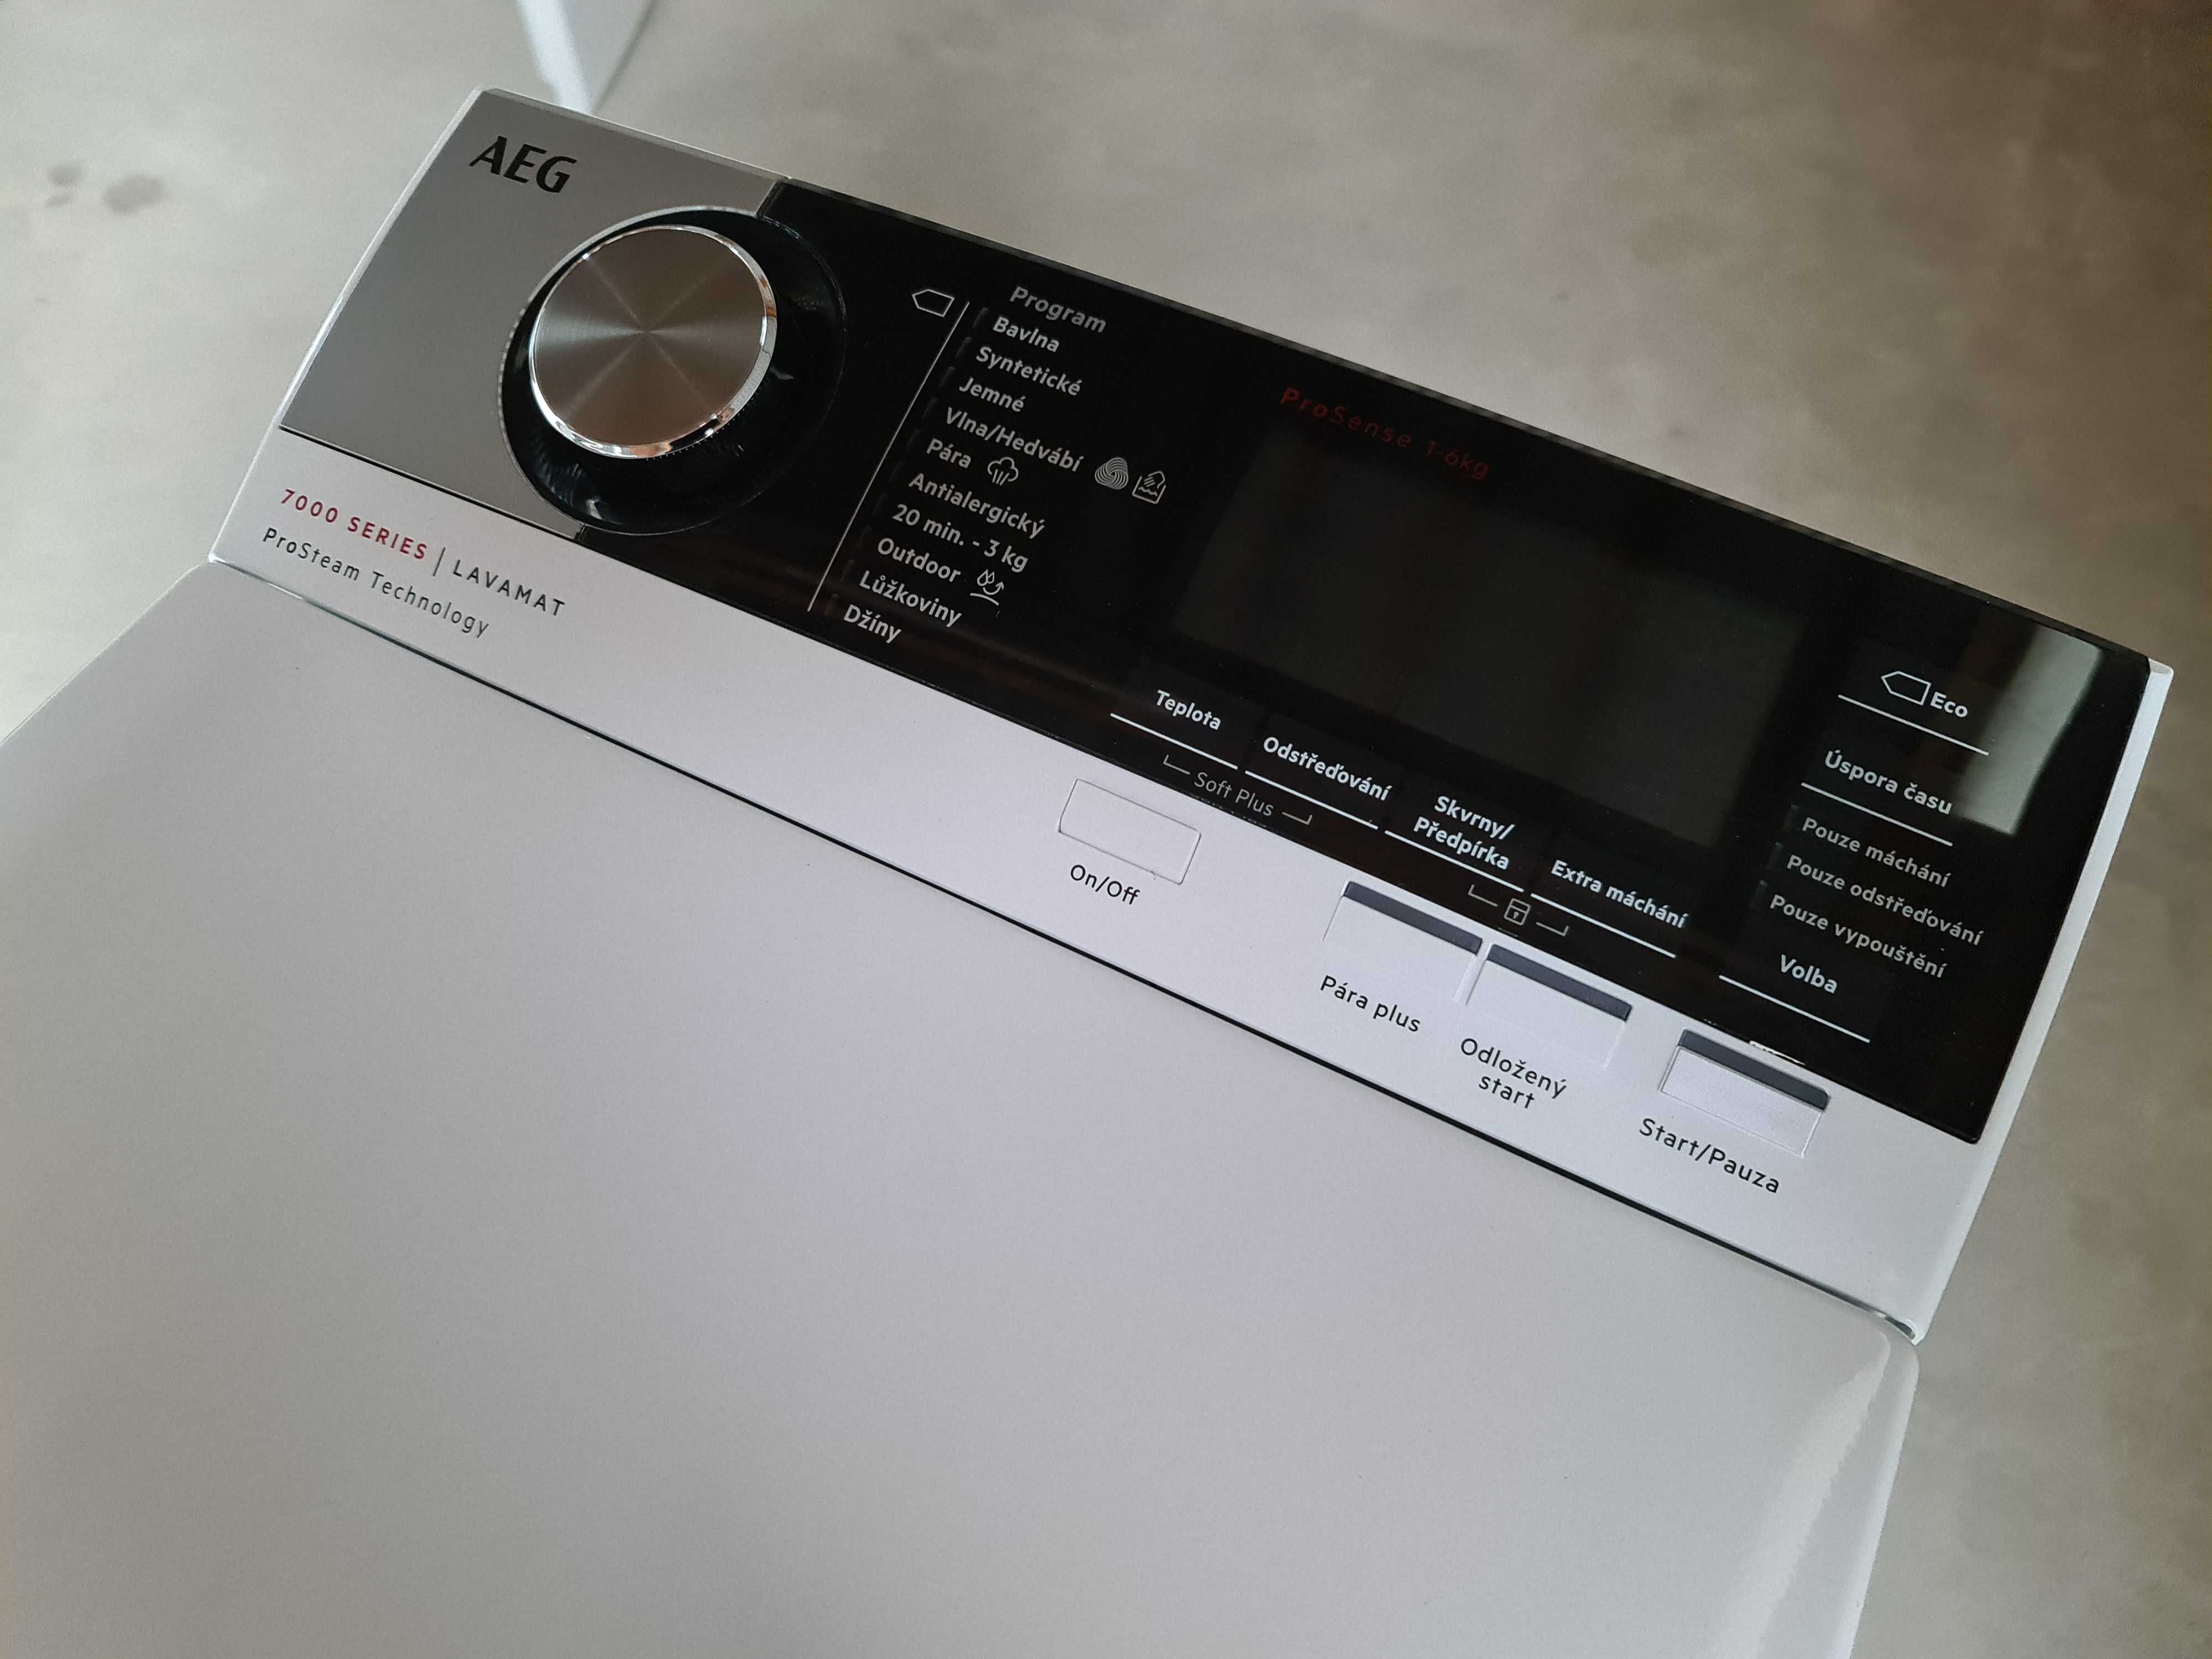 Пральна/стиральная/ машина AEG lavamat 7000 Series ProSense 6 KG